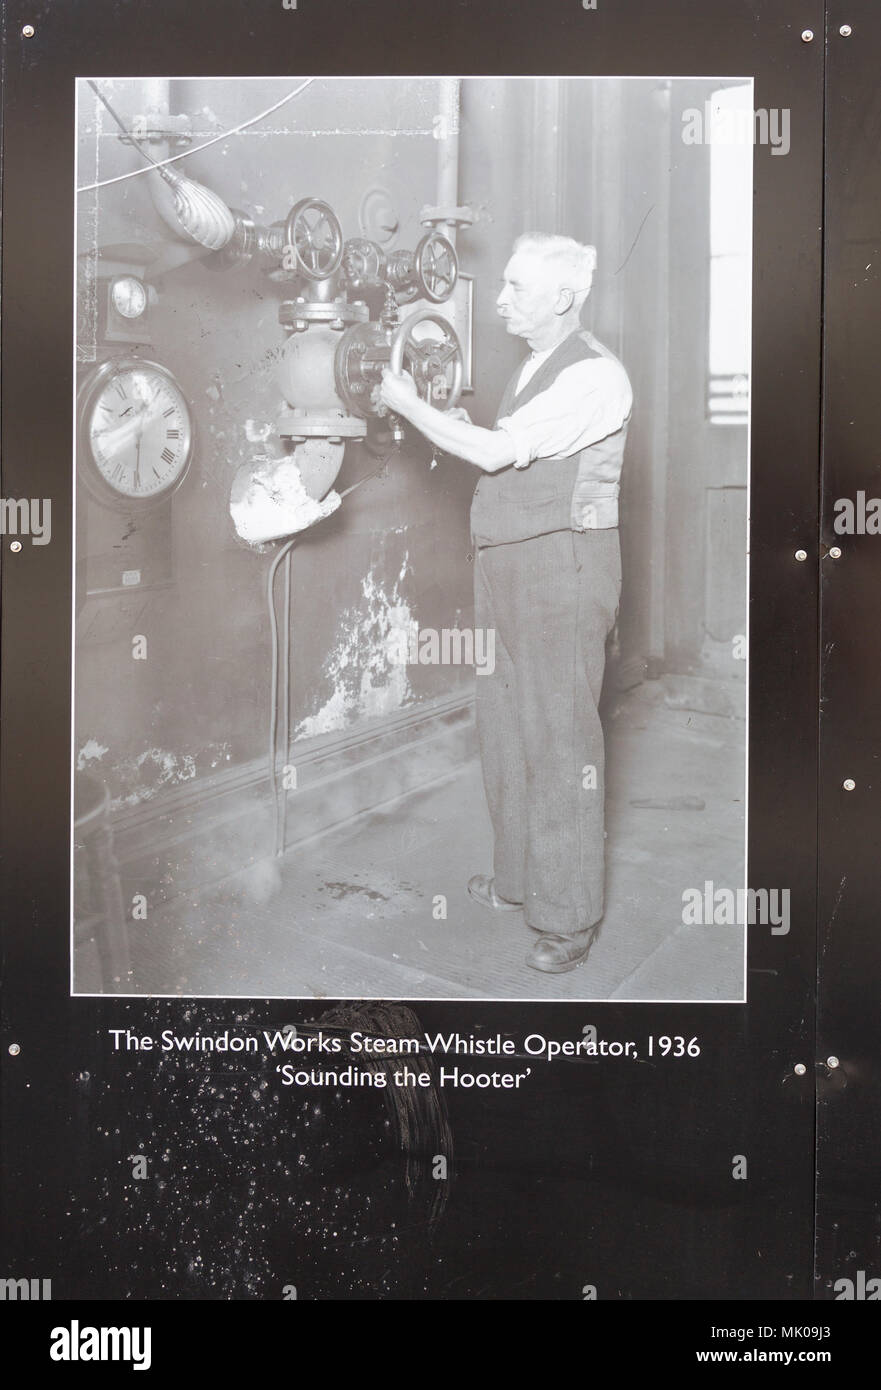 Public display del vecchio e storico immagini sulle opere di GWR, Swindon, Wiltshire, Inghilterra, Regno Unito fischio del vapore operatore 'Sounding l' avvisatore acustico Foto Stock